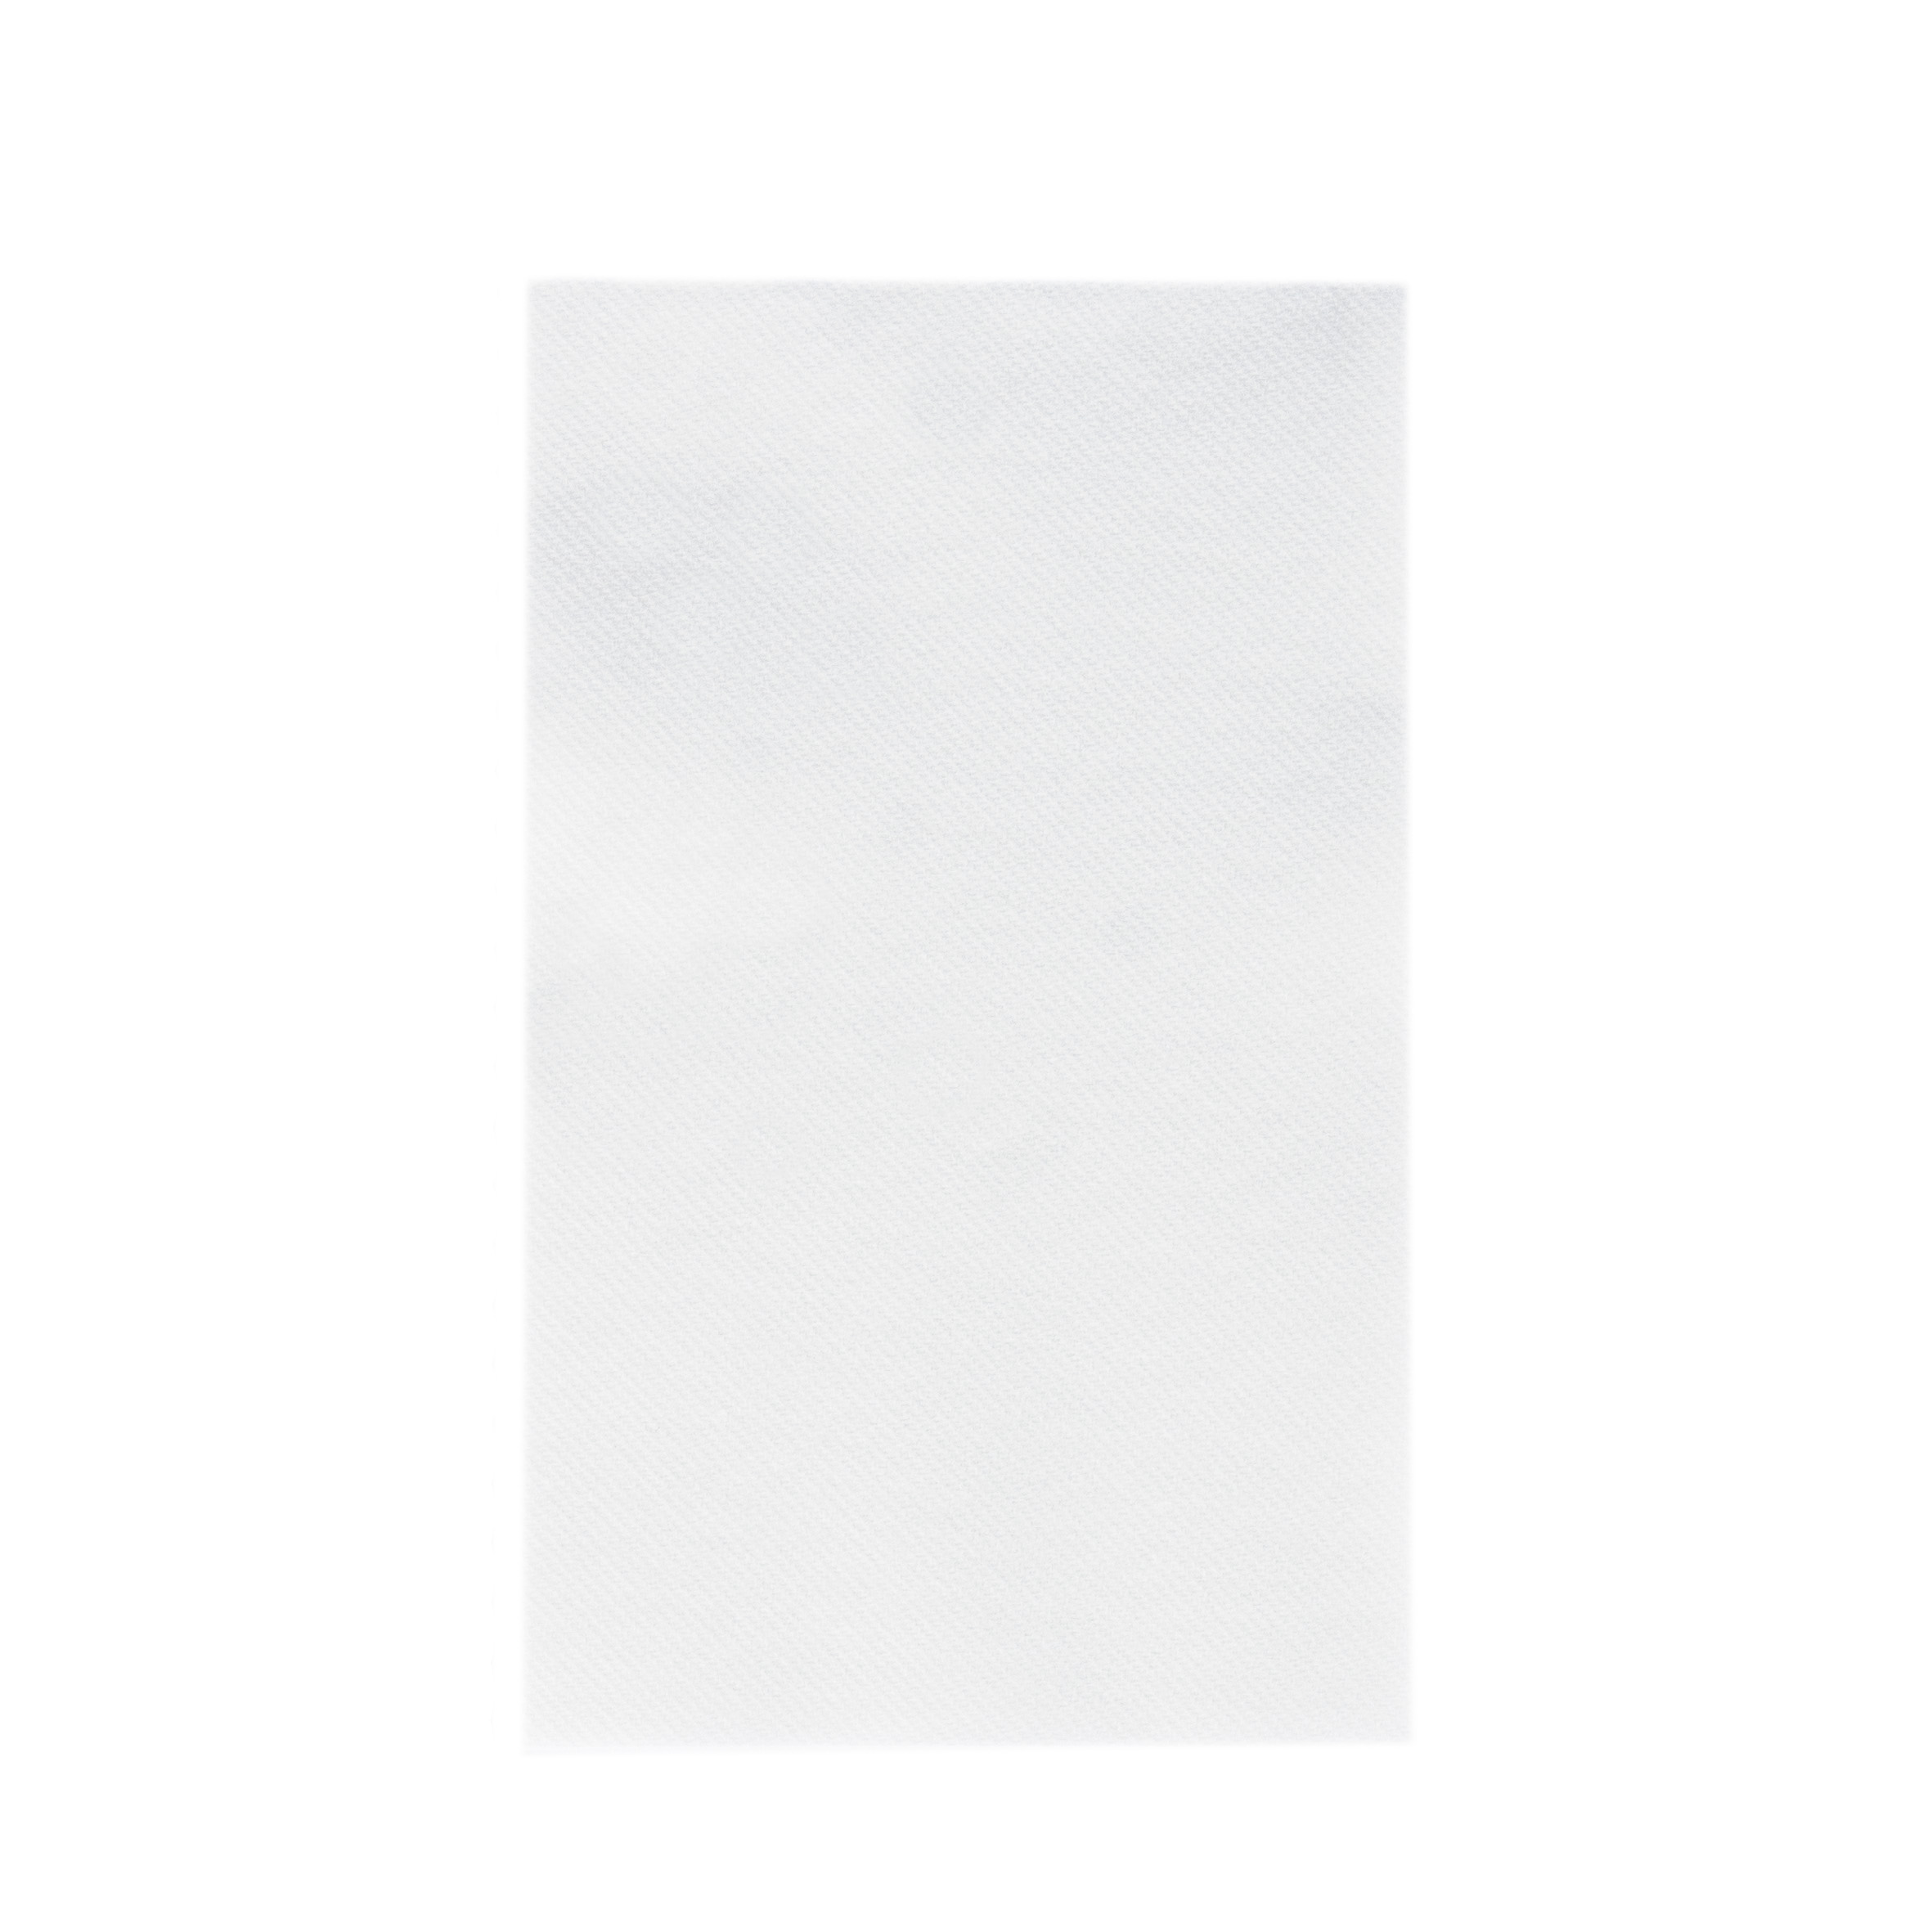 Mank Handtuch Linclass-Light 1/4 Falz, 24 x 40 cm, Basic weiss